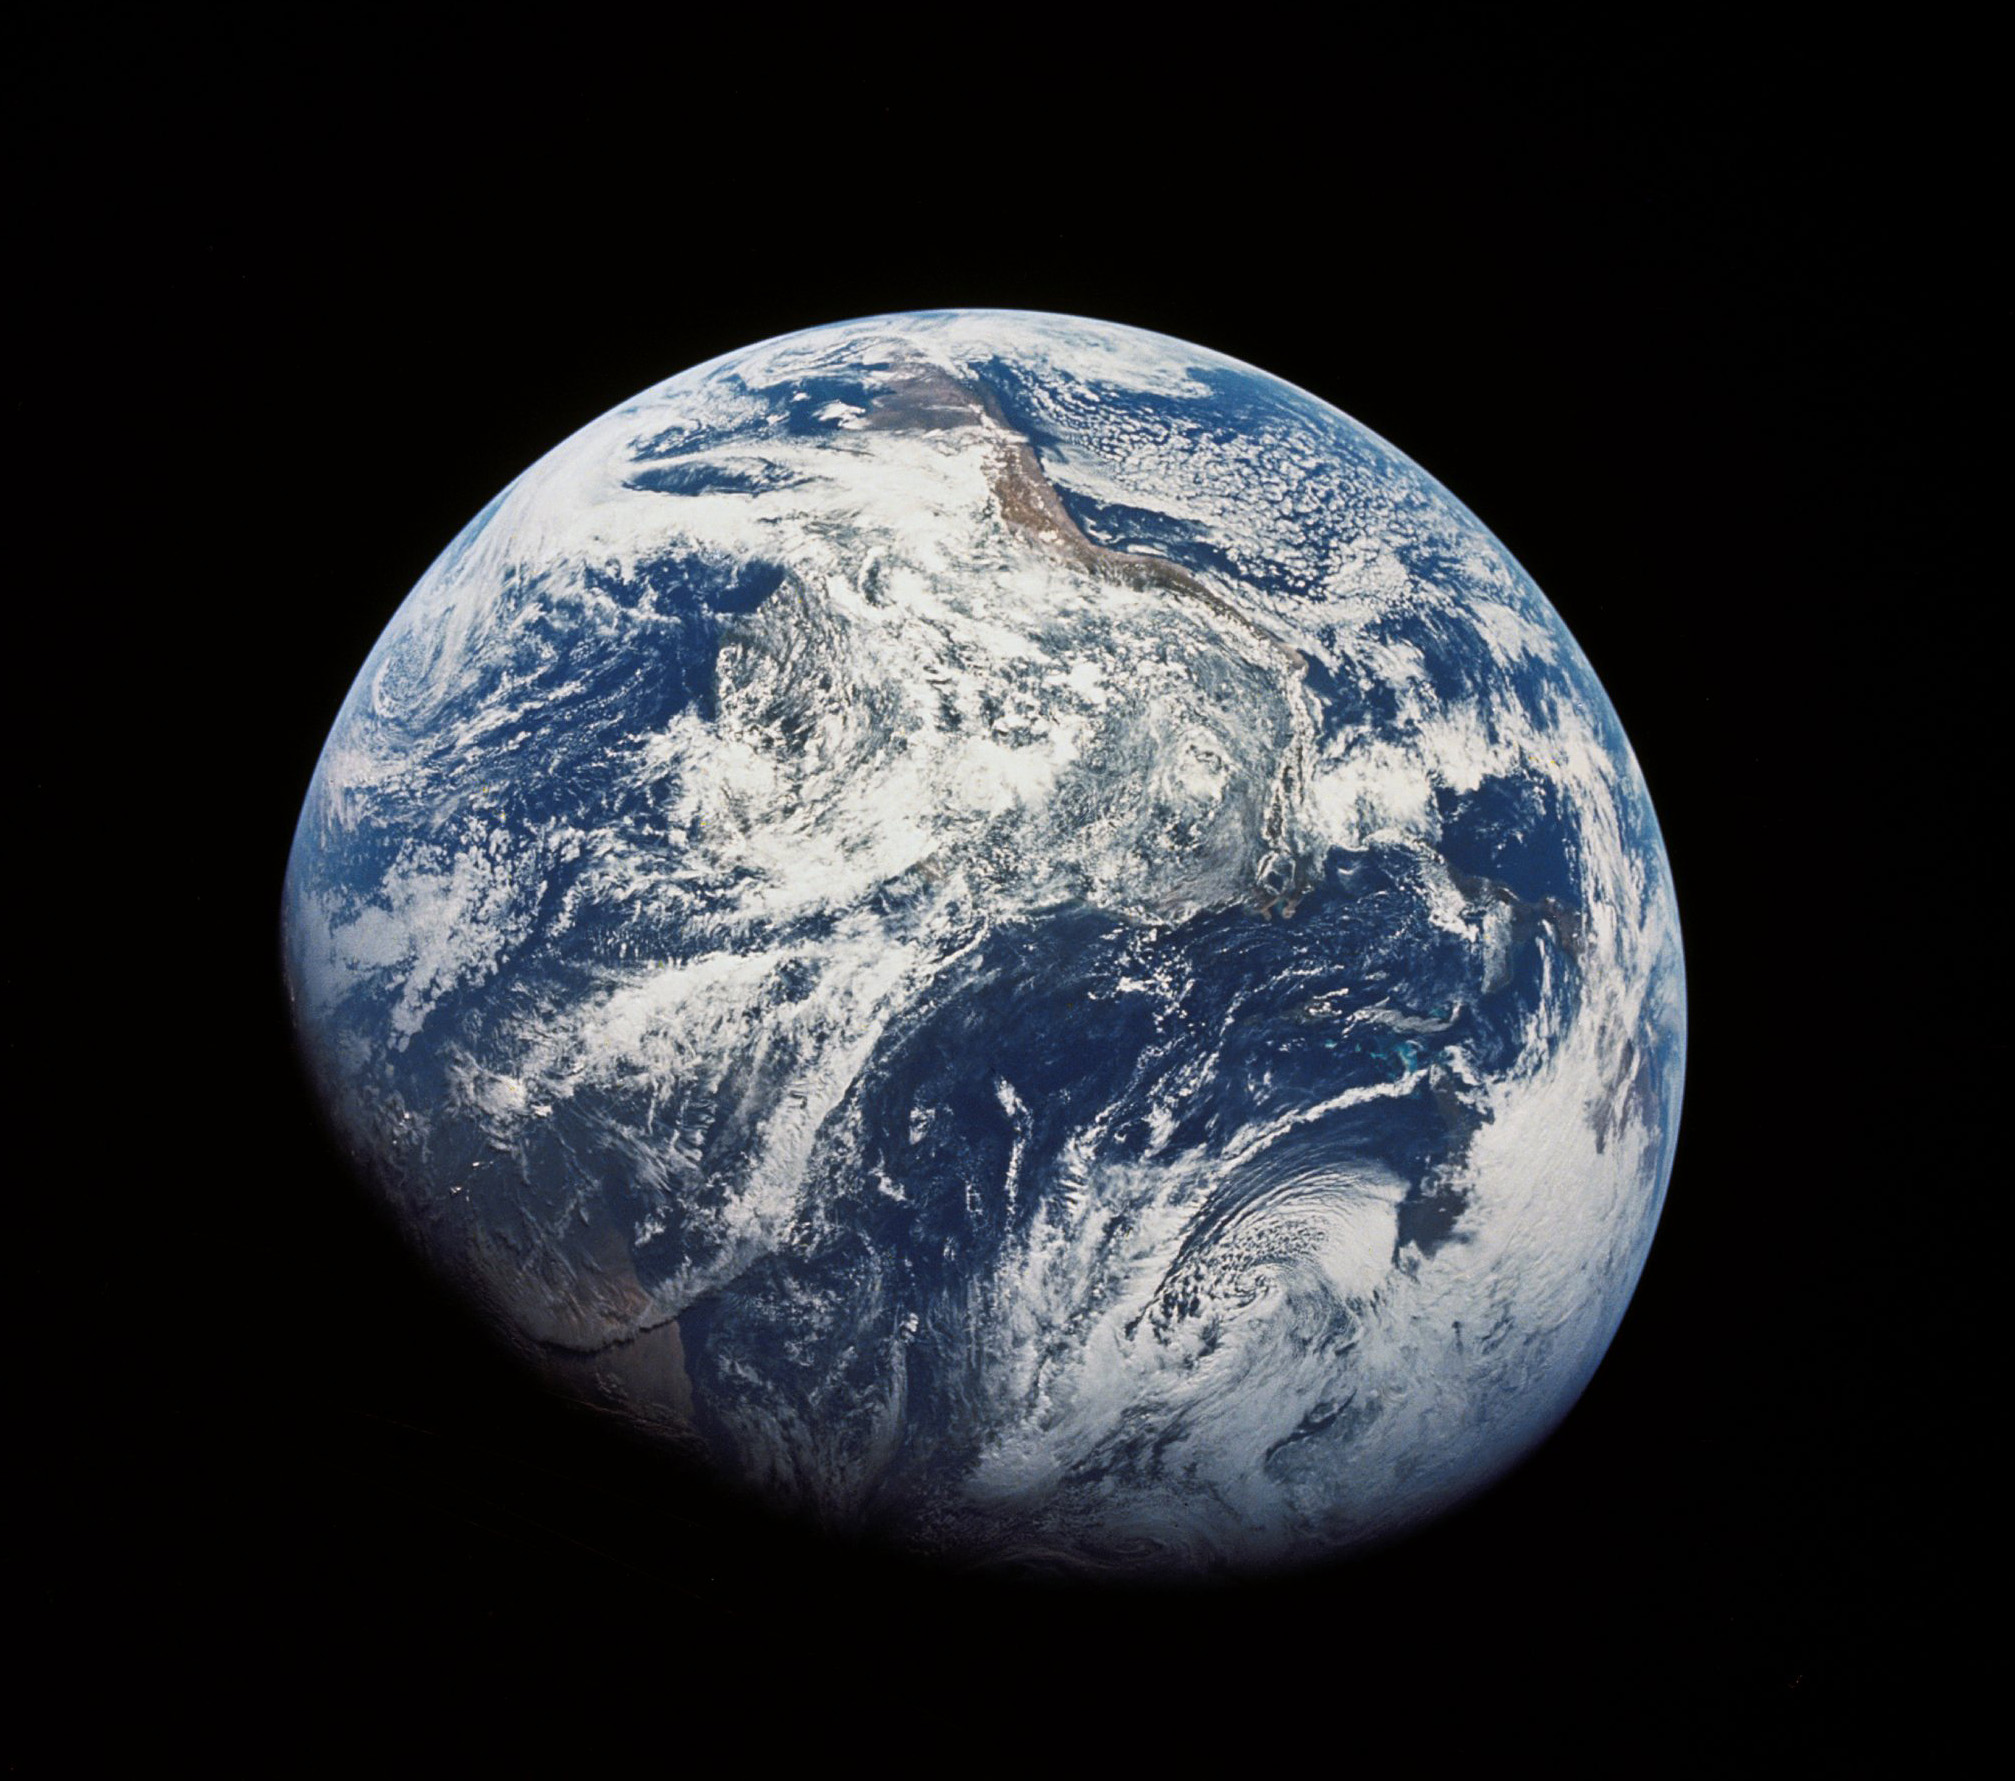 Земля с расстояния 30 тысяч километров, фото сделано с борта космического корабля "Аполлон-8". Фото © NASA